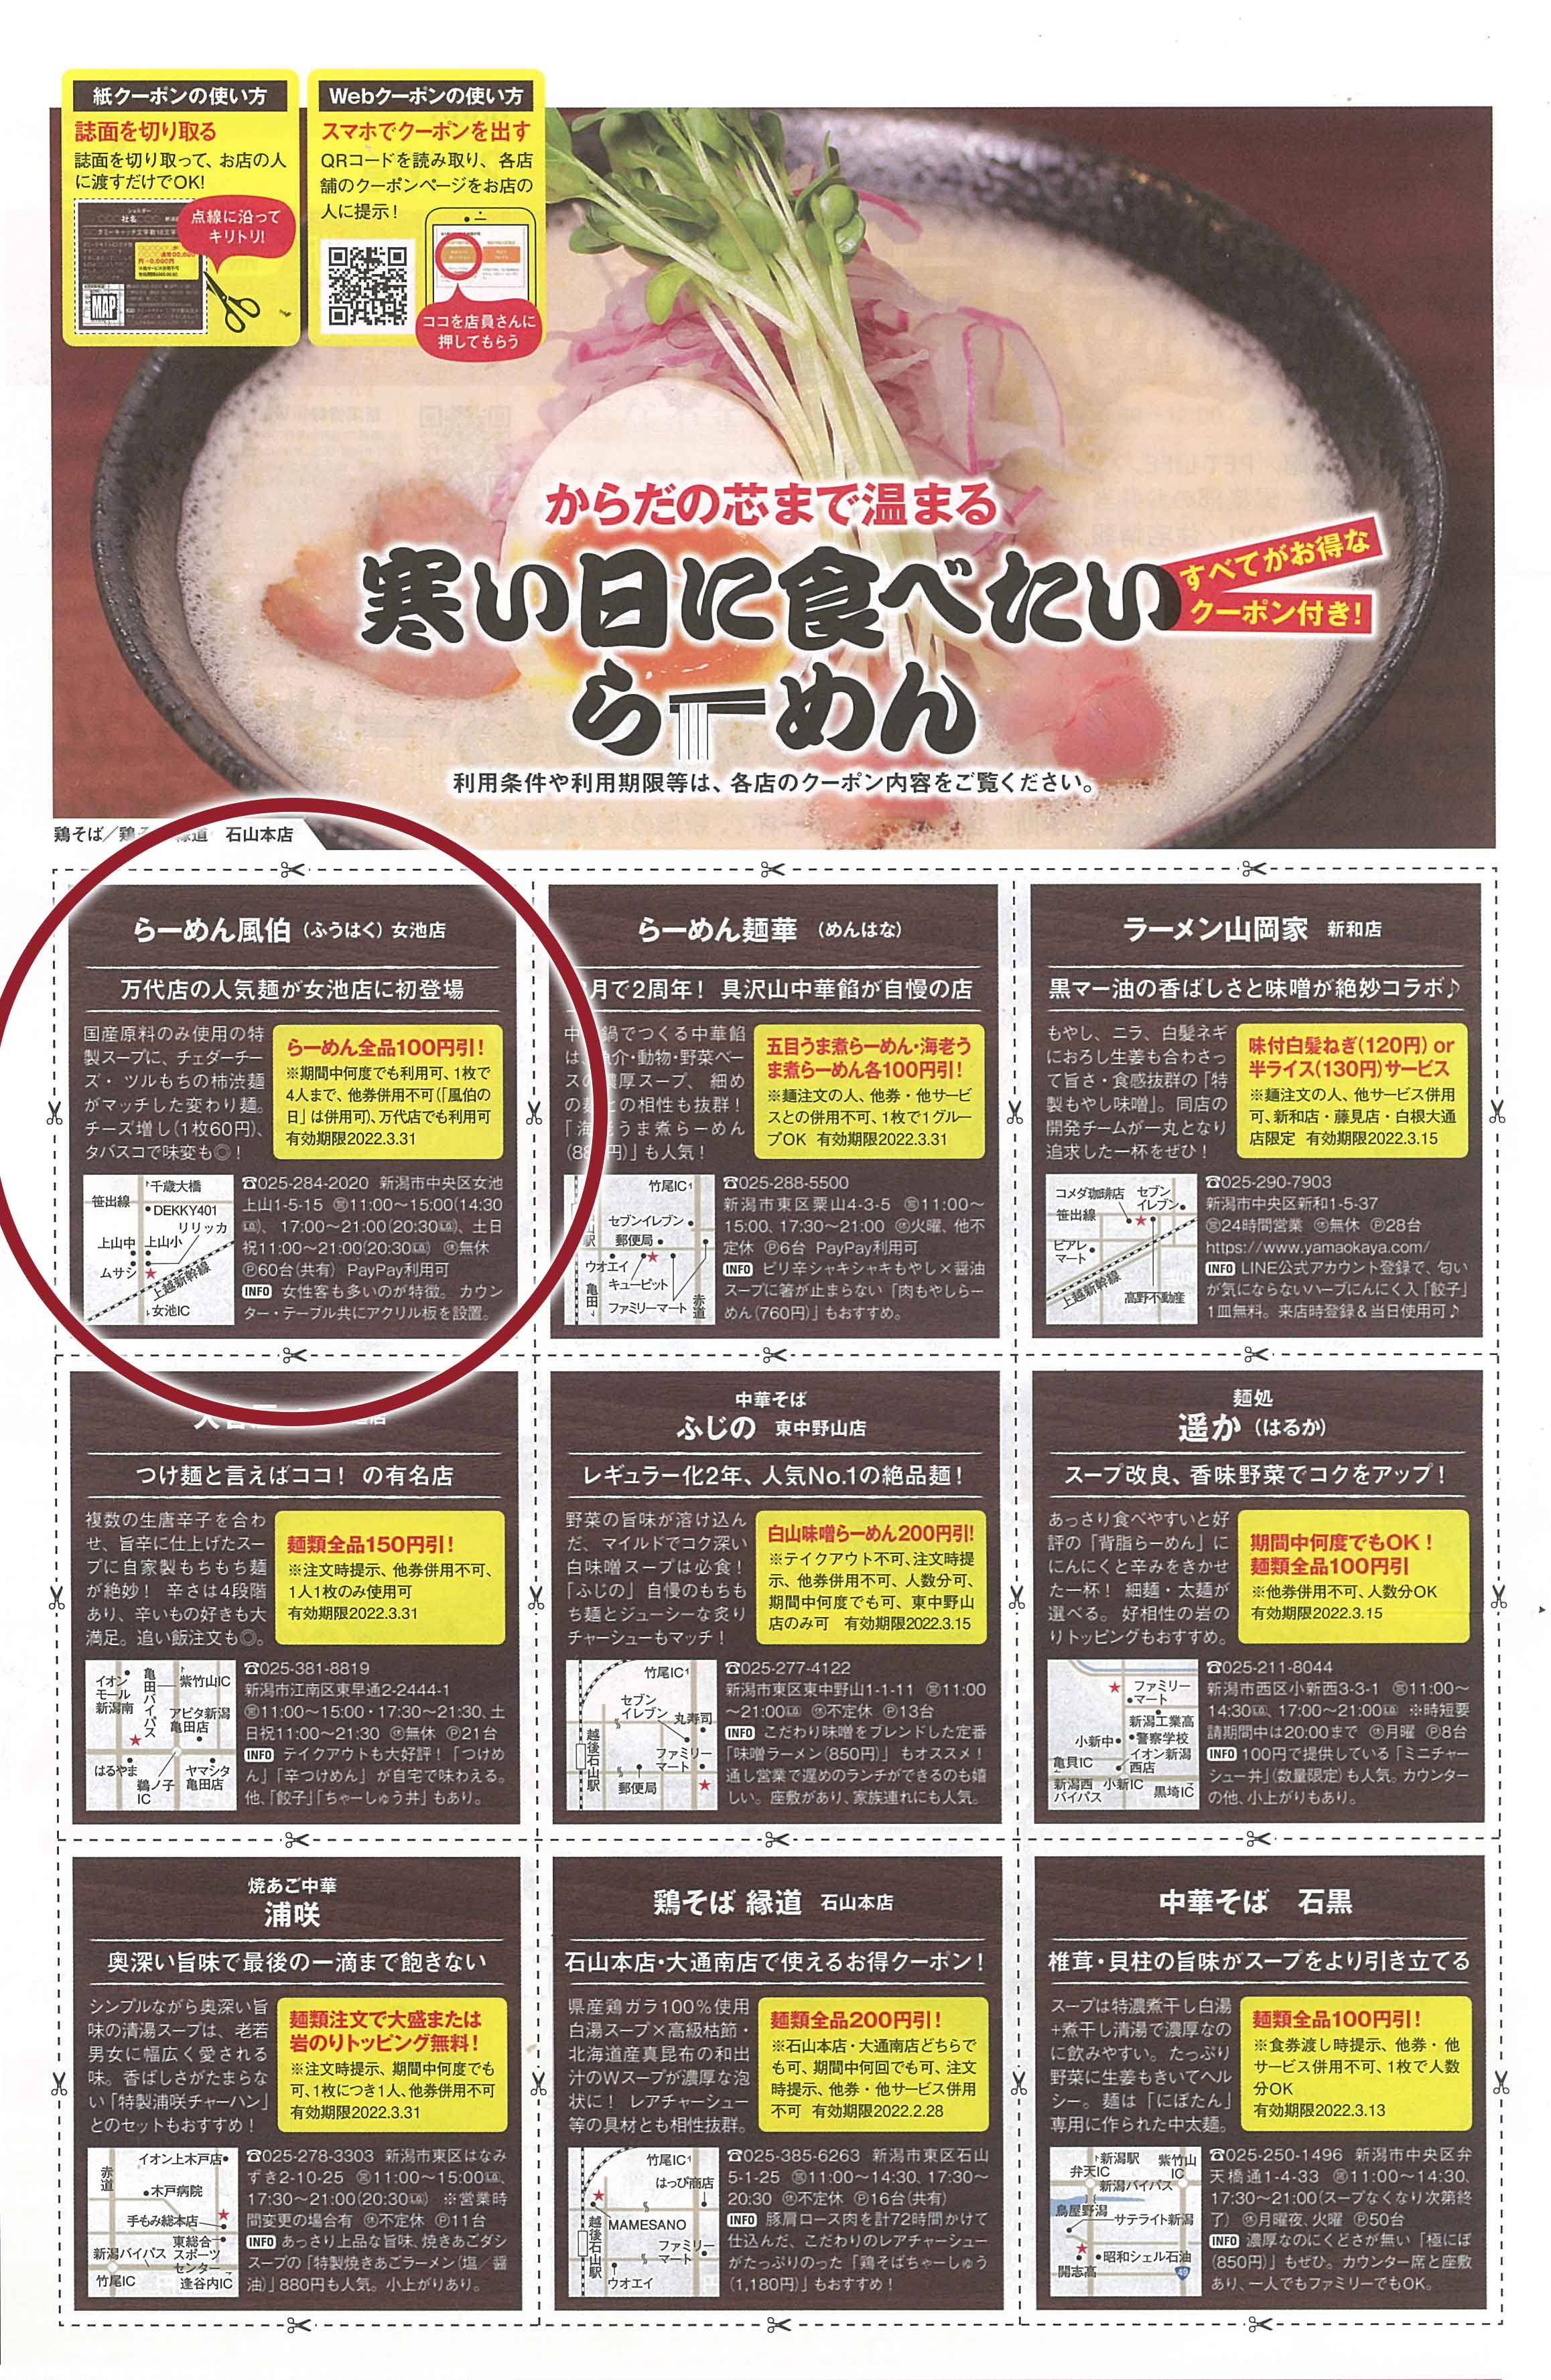 2月16日号新潟情報「寒い日に食べたいらーめん」特集